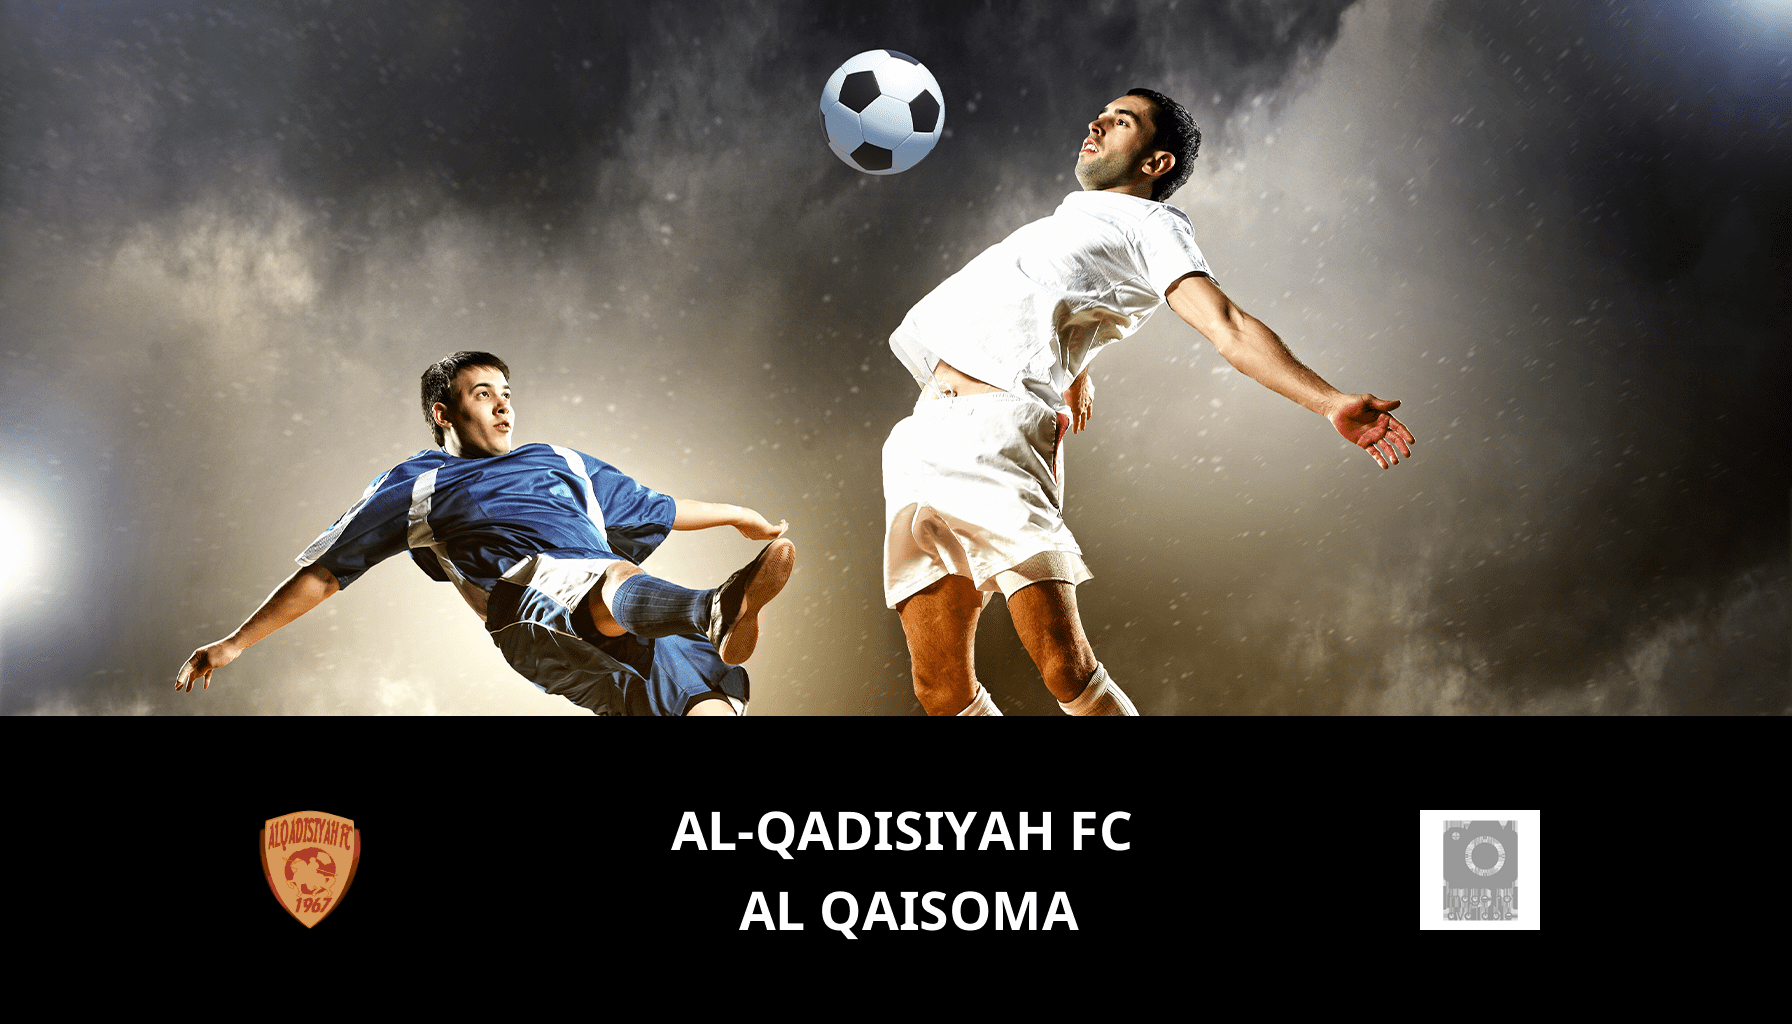 Previsione per Al-Qadisiyah FC VS Al Qaisoma il 30/04/2024 Analysis of the match